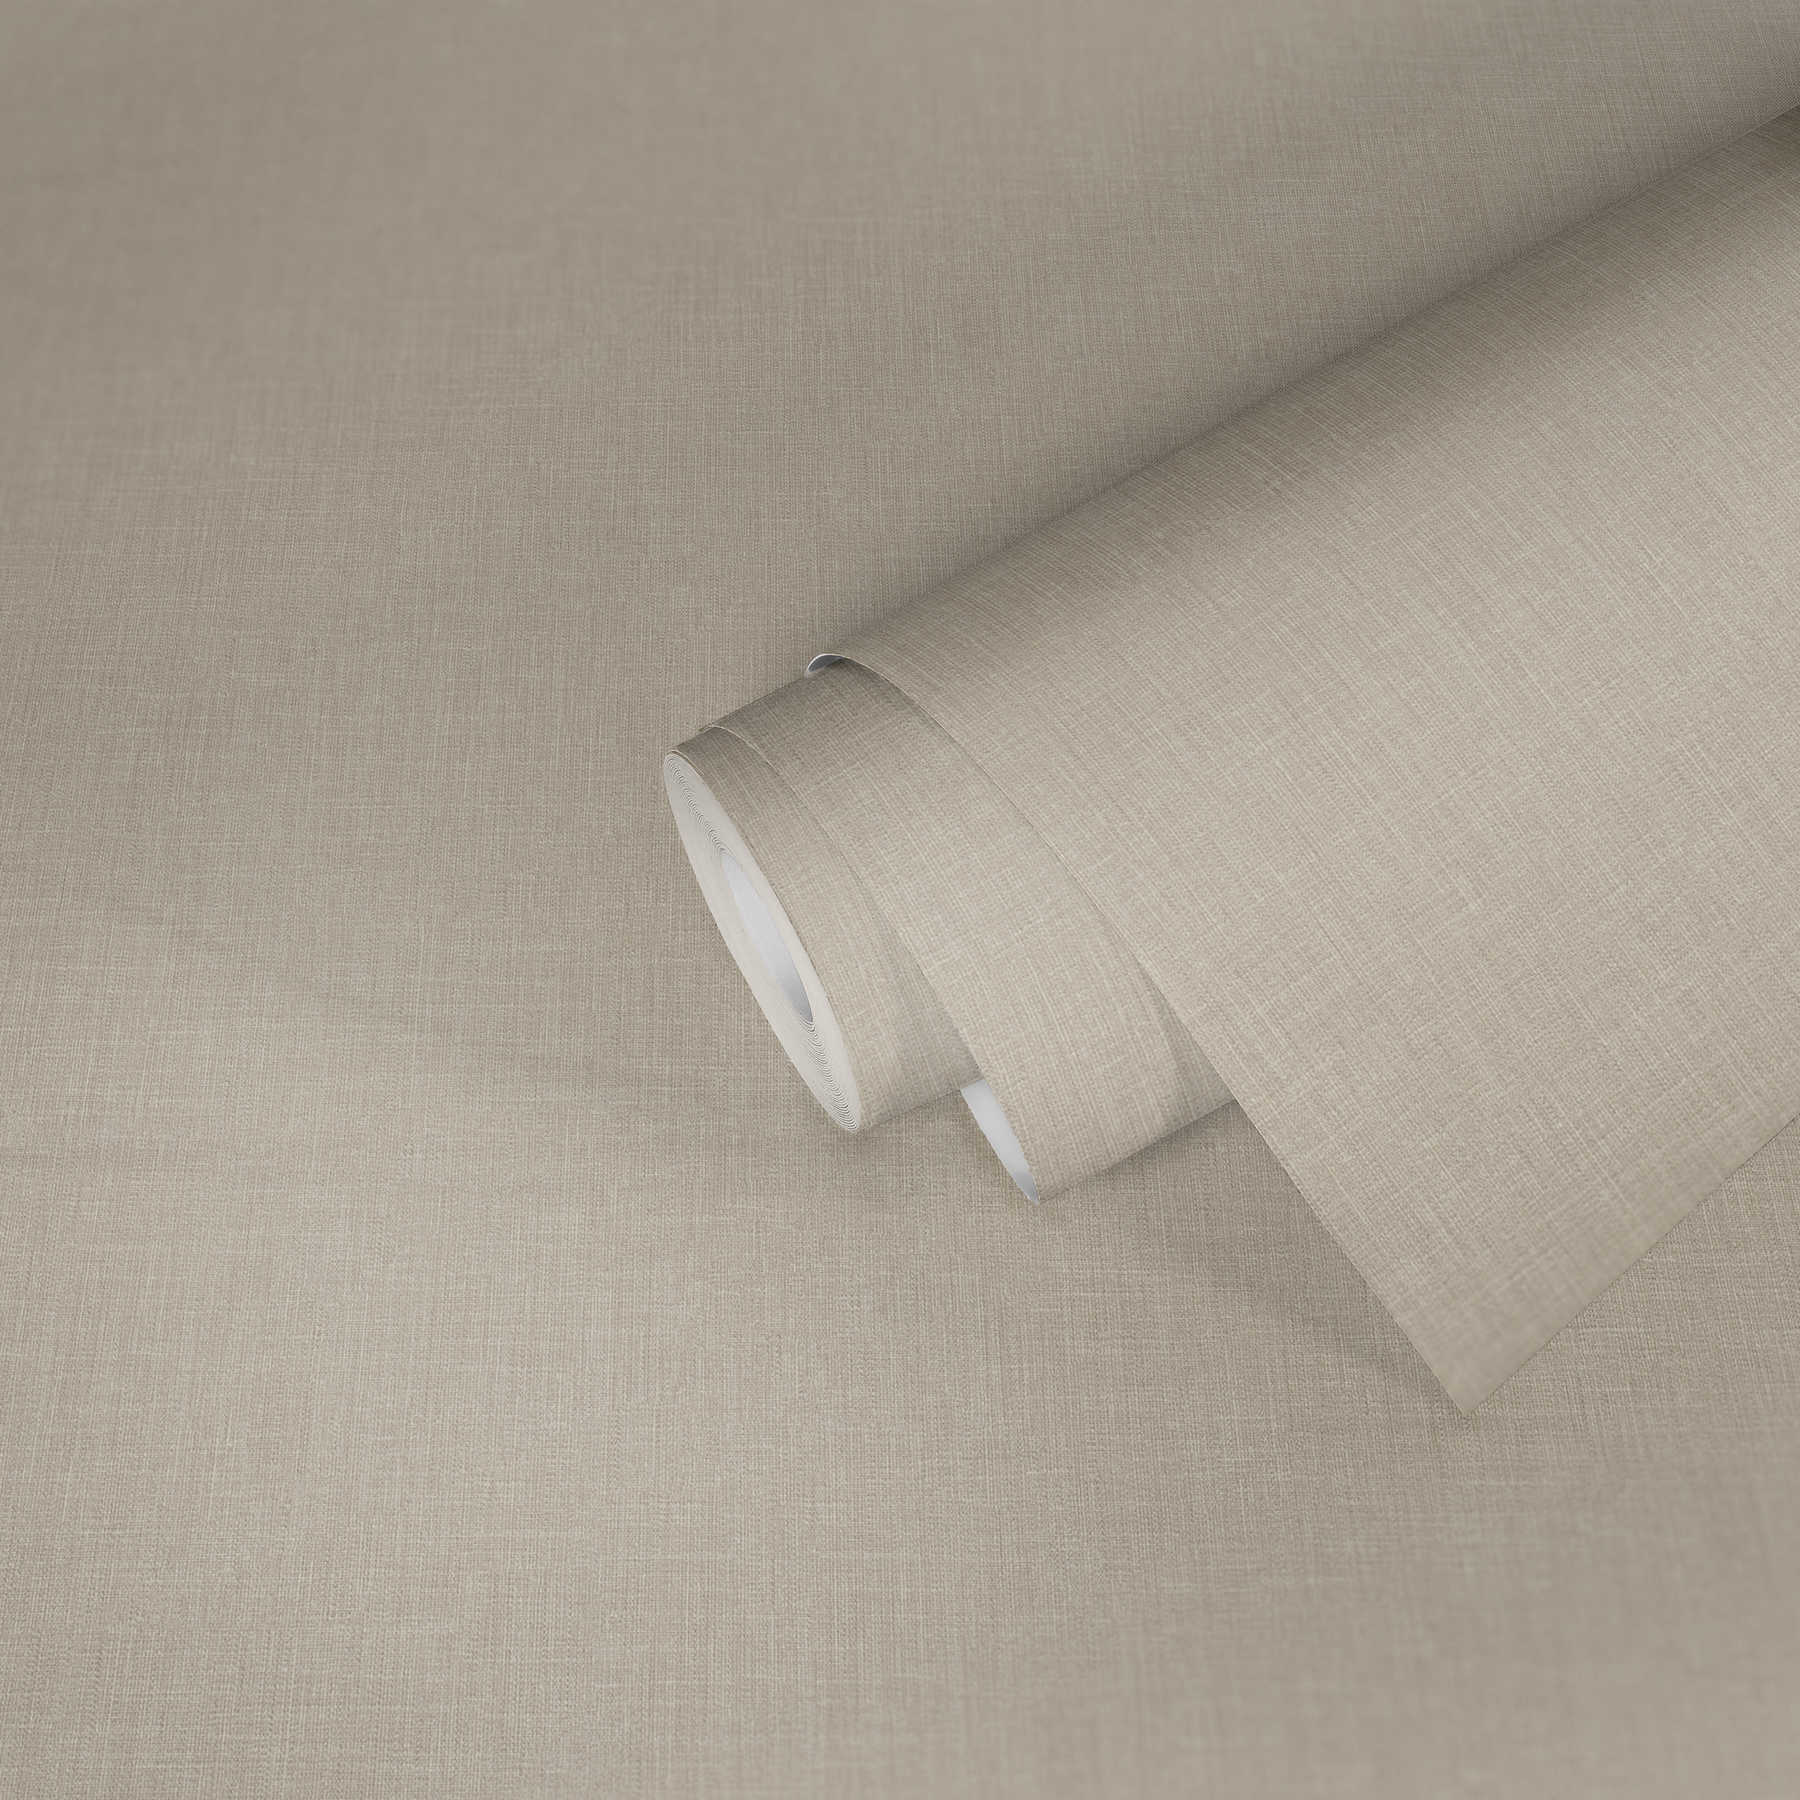             Papier peint intissé beige chiné aspect lin & structure textile
        